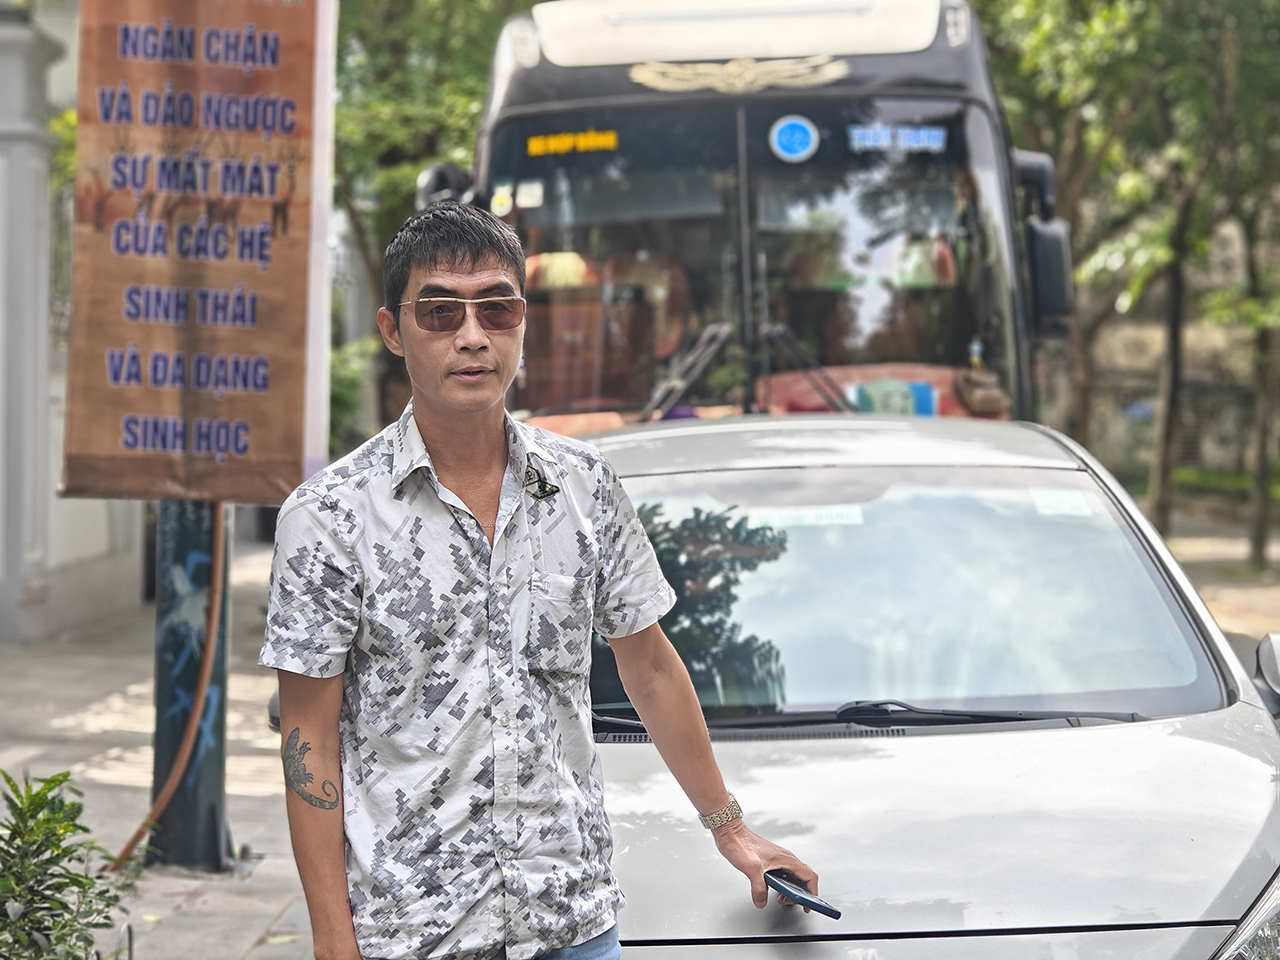 Anh Nguyễn Ngọc Thao, một tài xế chuyên nghiệp cho rằng, cần kiểm tra tâm lý kỹ càng với những người đi học giấy phép lái xe. Theo anh, phẩm chất cần có nhất của người ngồi sau vô lăng là sự điềm tĩnh.